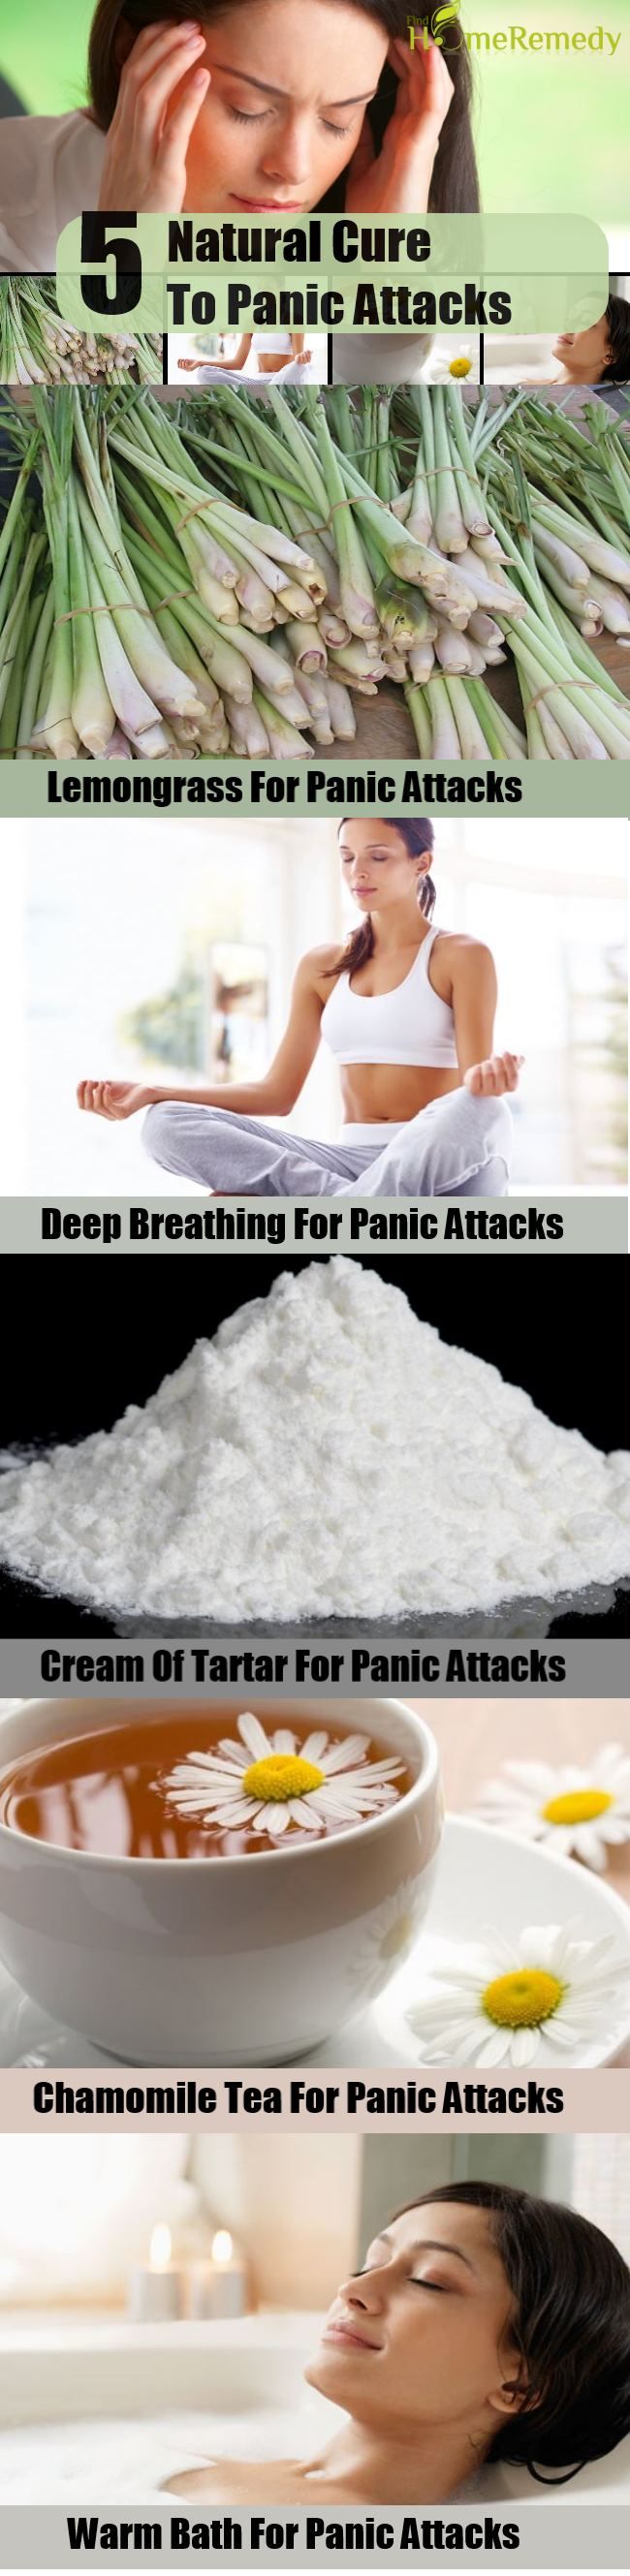 5 remède naturel pour les attaques de panique